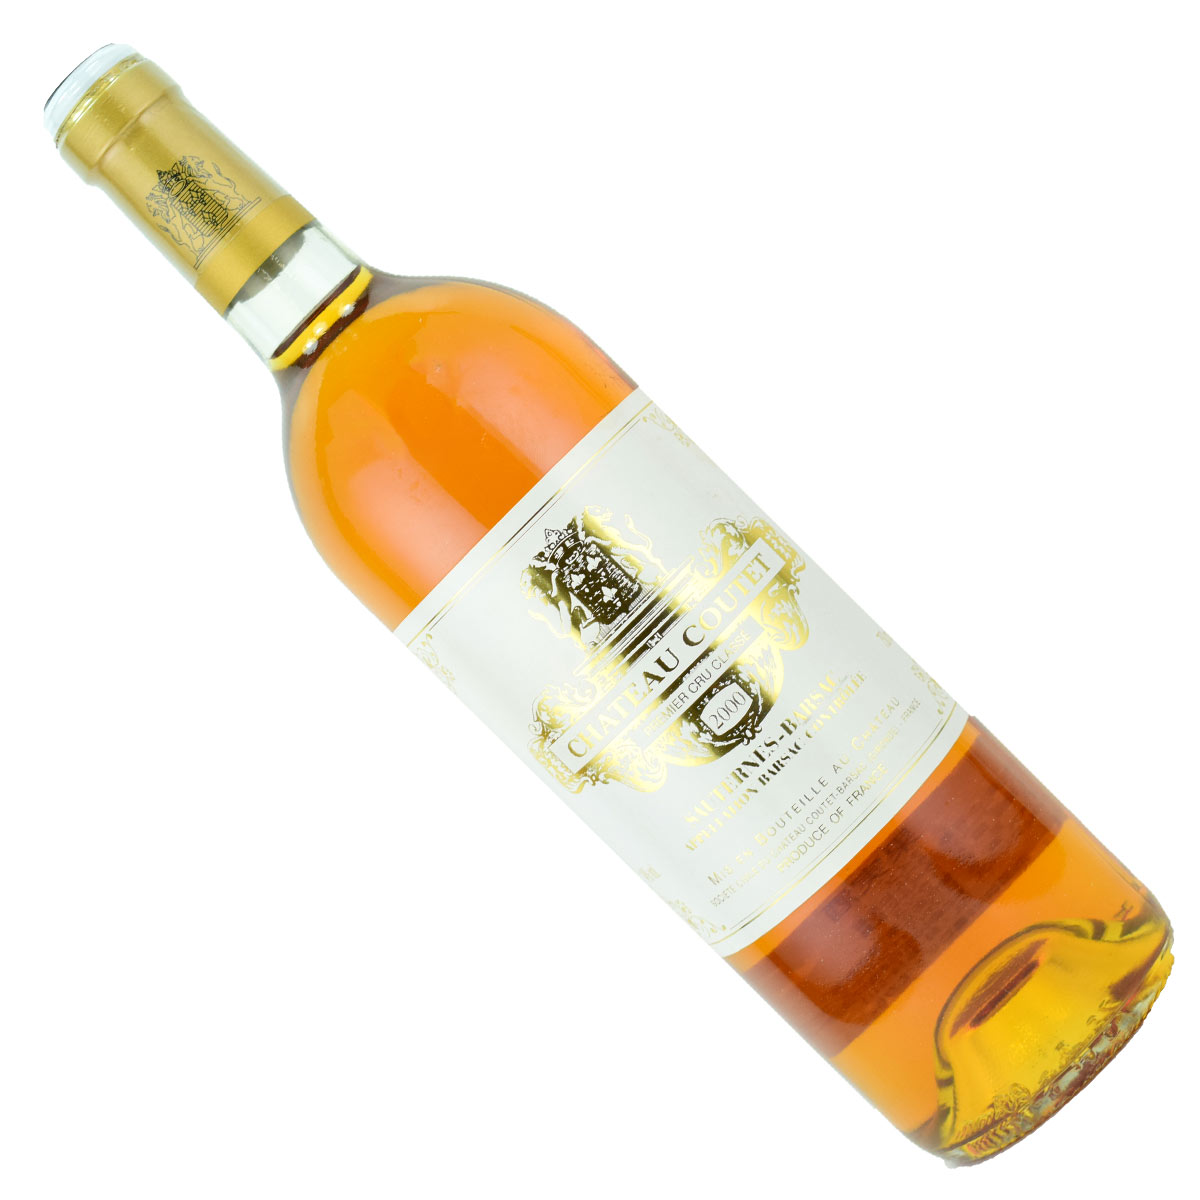 シャトー・クーテ　2000（平成12年）　750ml　貴腐ワイン　ソーテルヌ　格付1級　Chateau Coutet